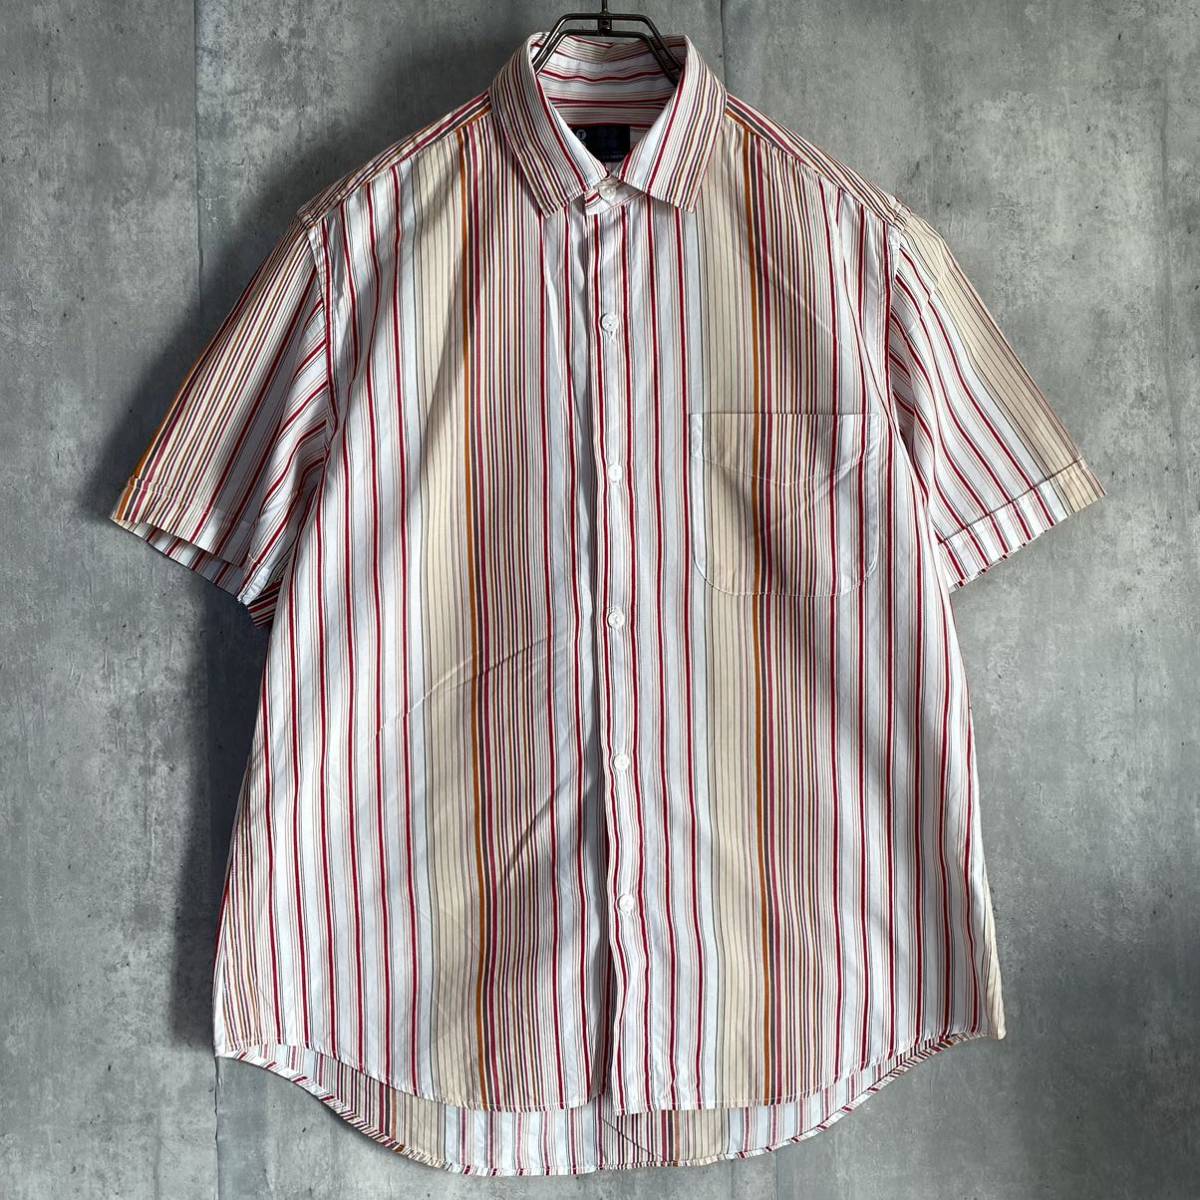  tea ke-TK short sleeves shirt size 3 stripe 